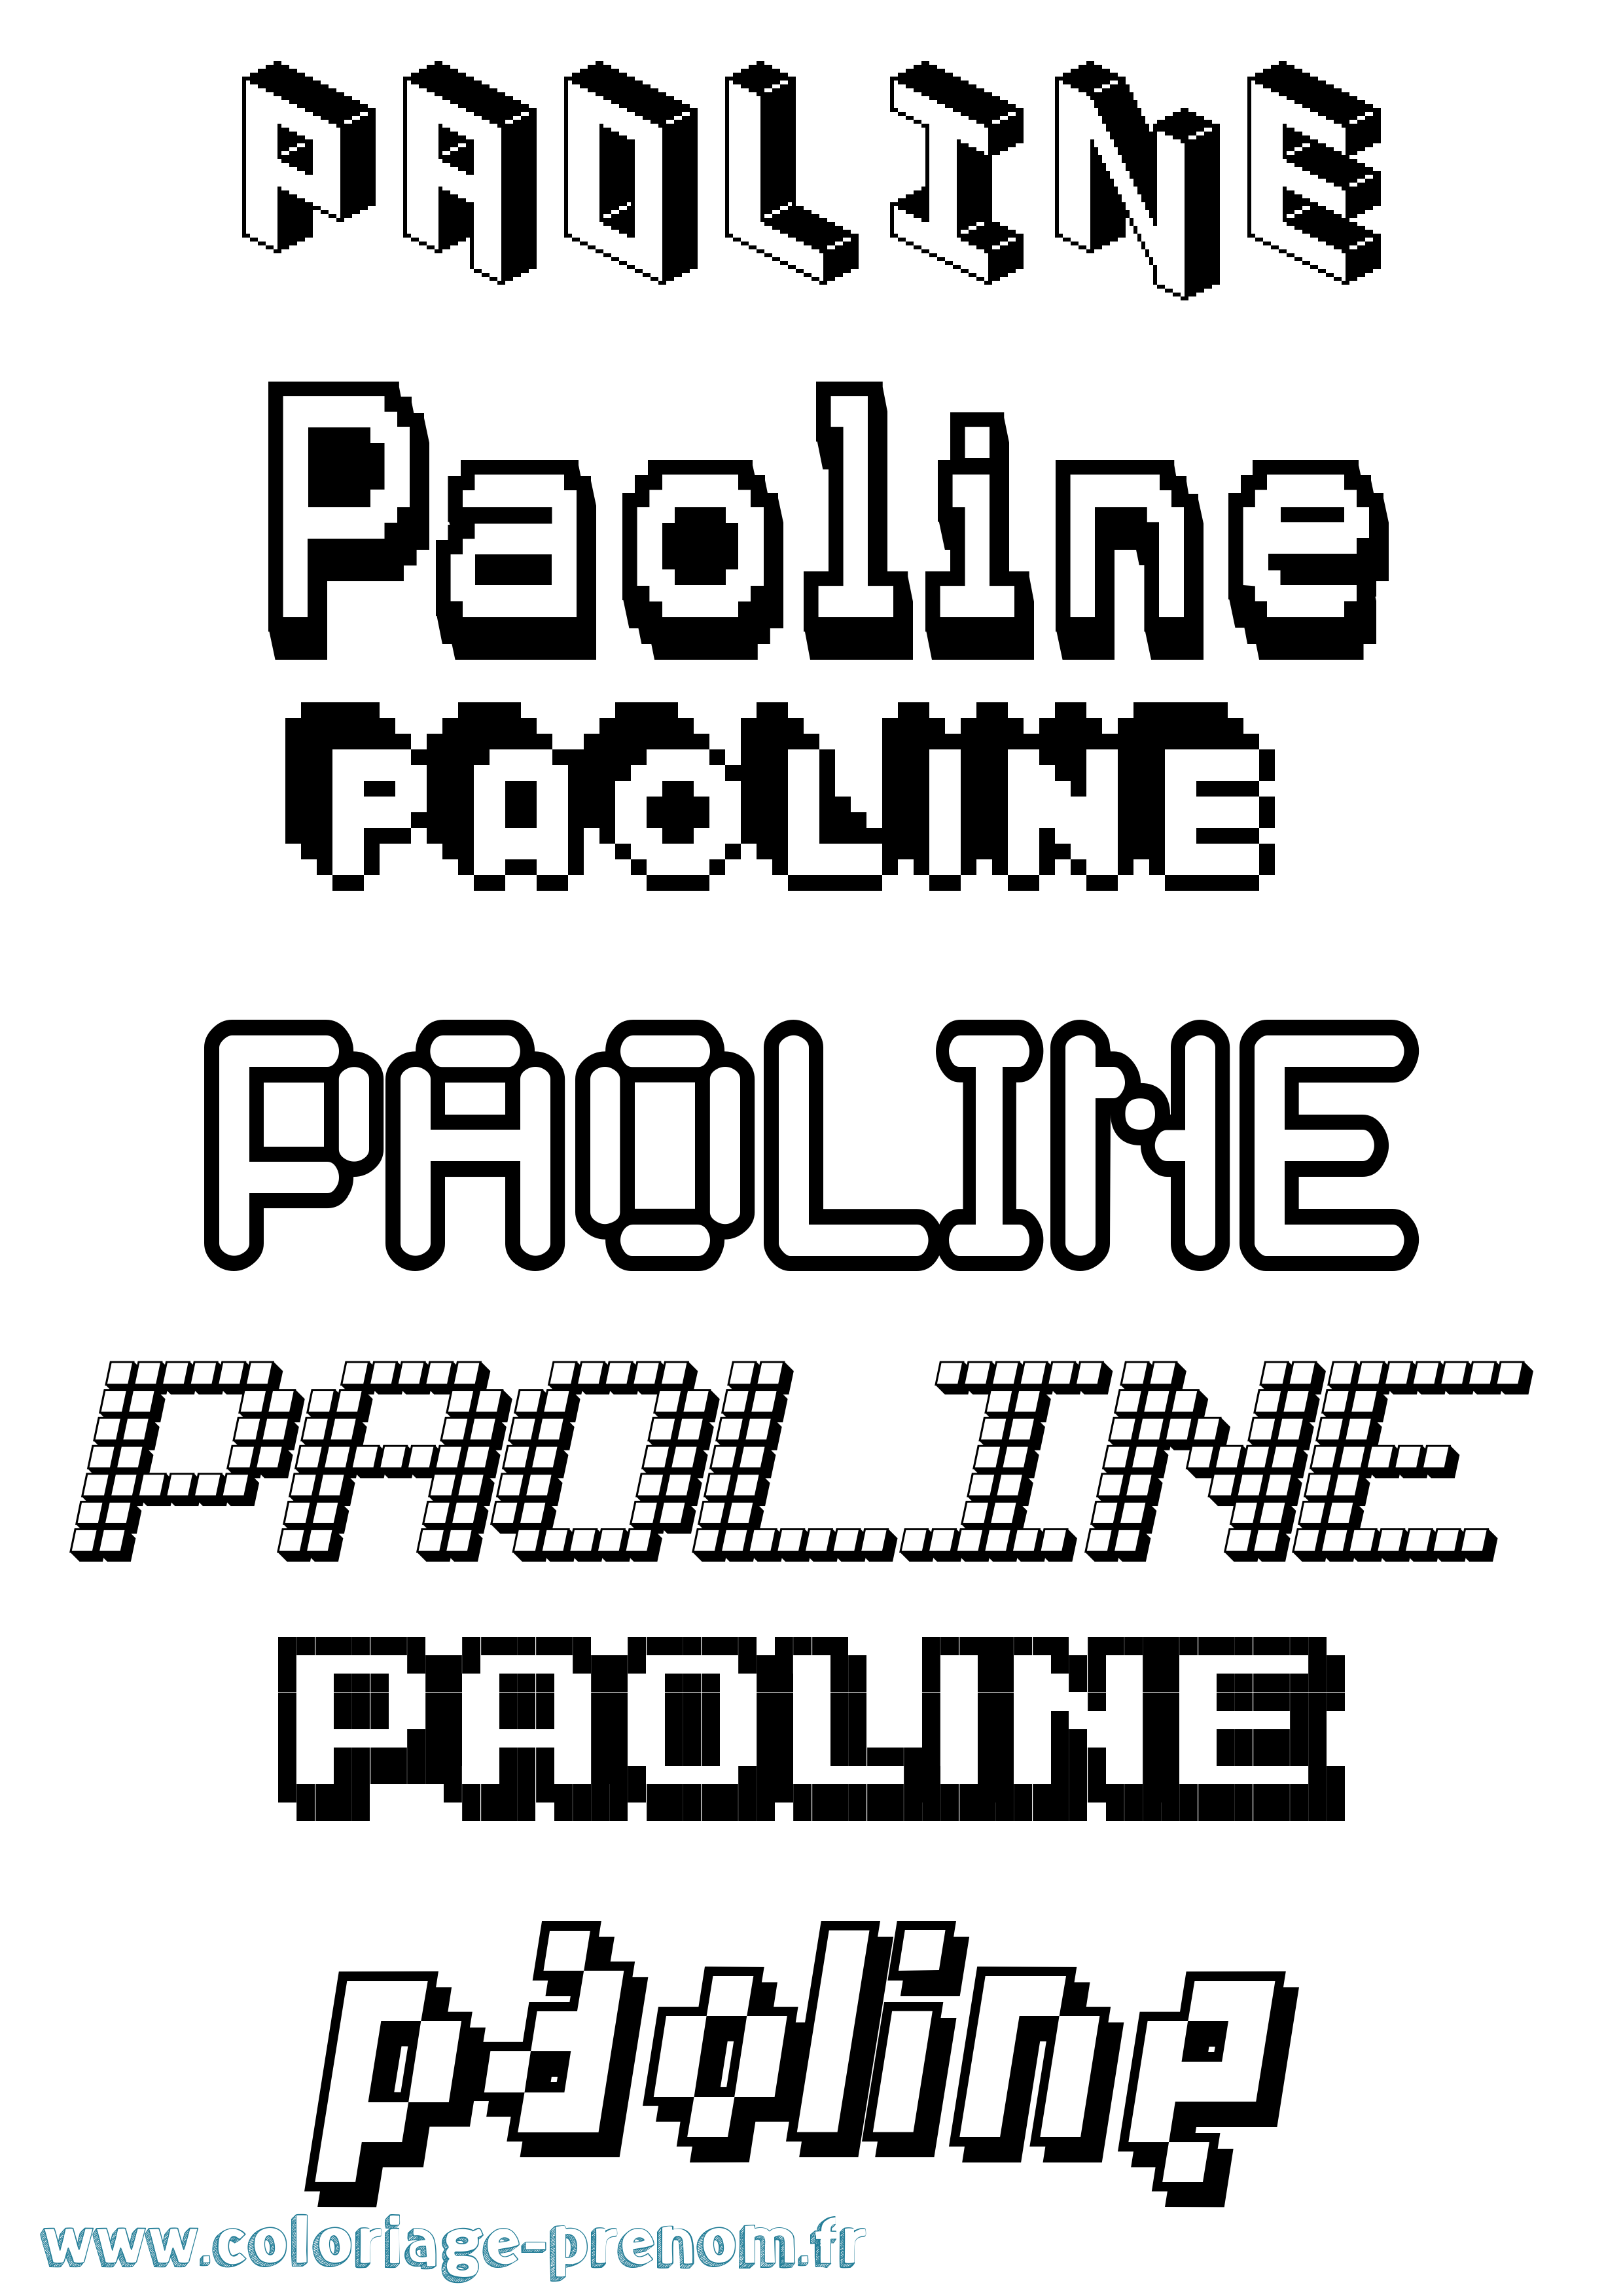 Coloriage prénom Paoline Pixel